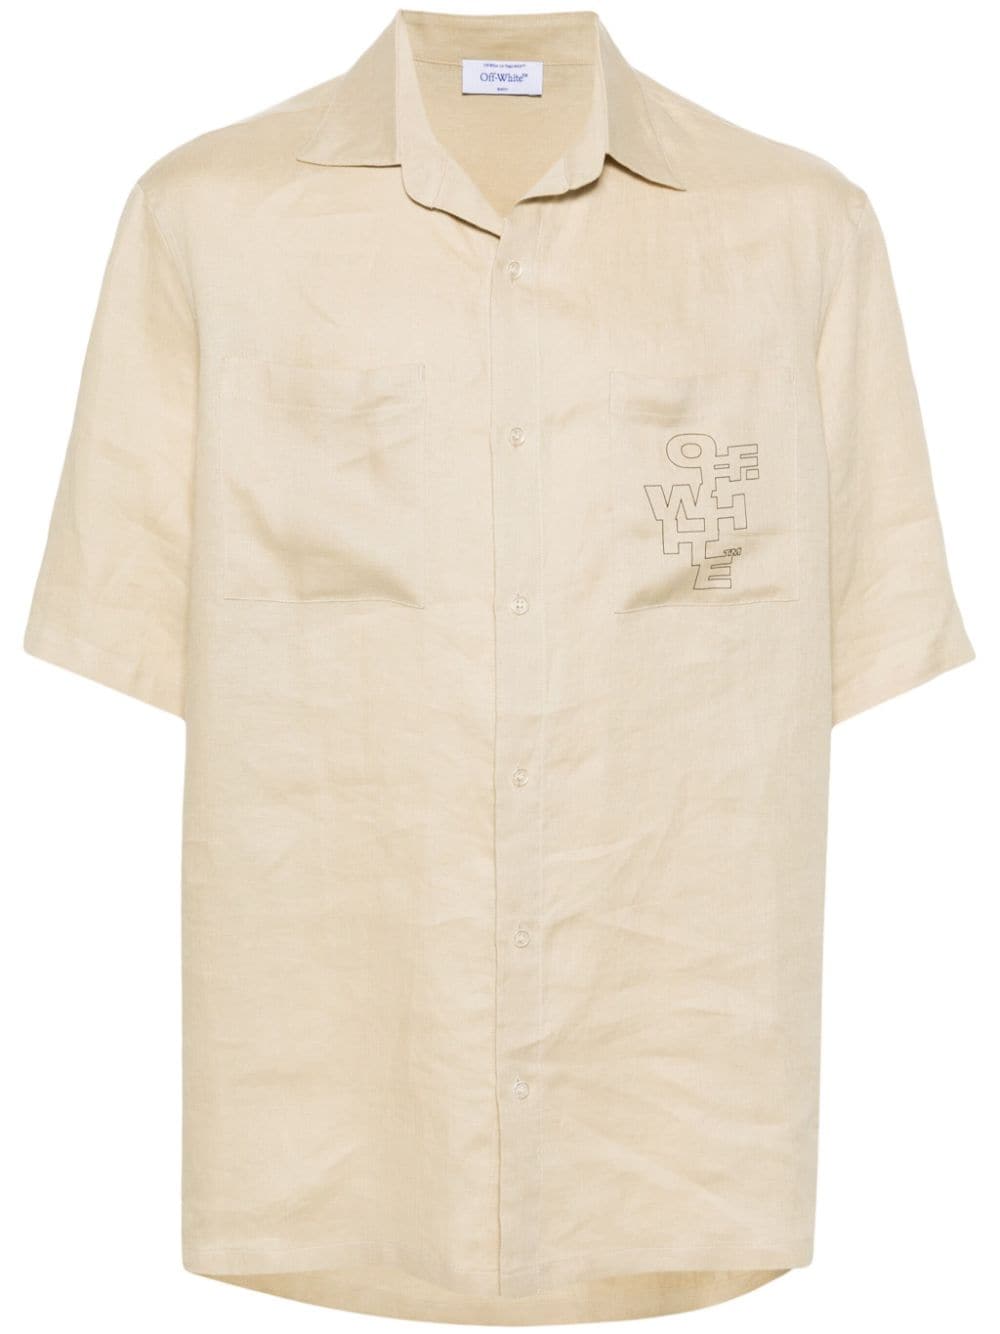 Off-White Outline Arrow linen shirt - Toni neutri